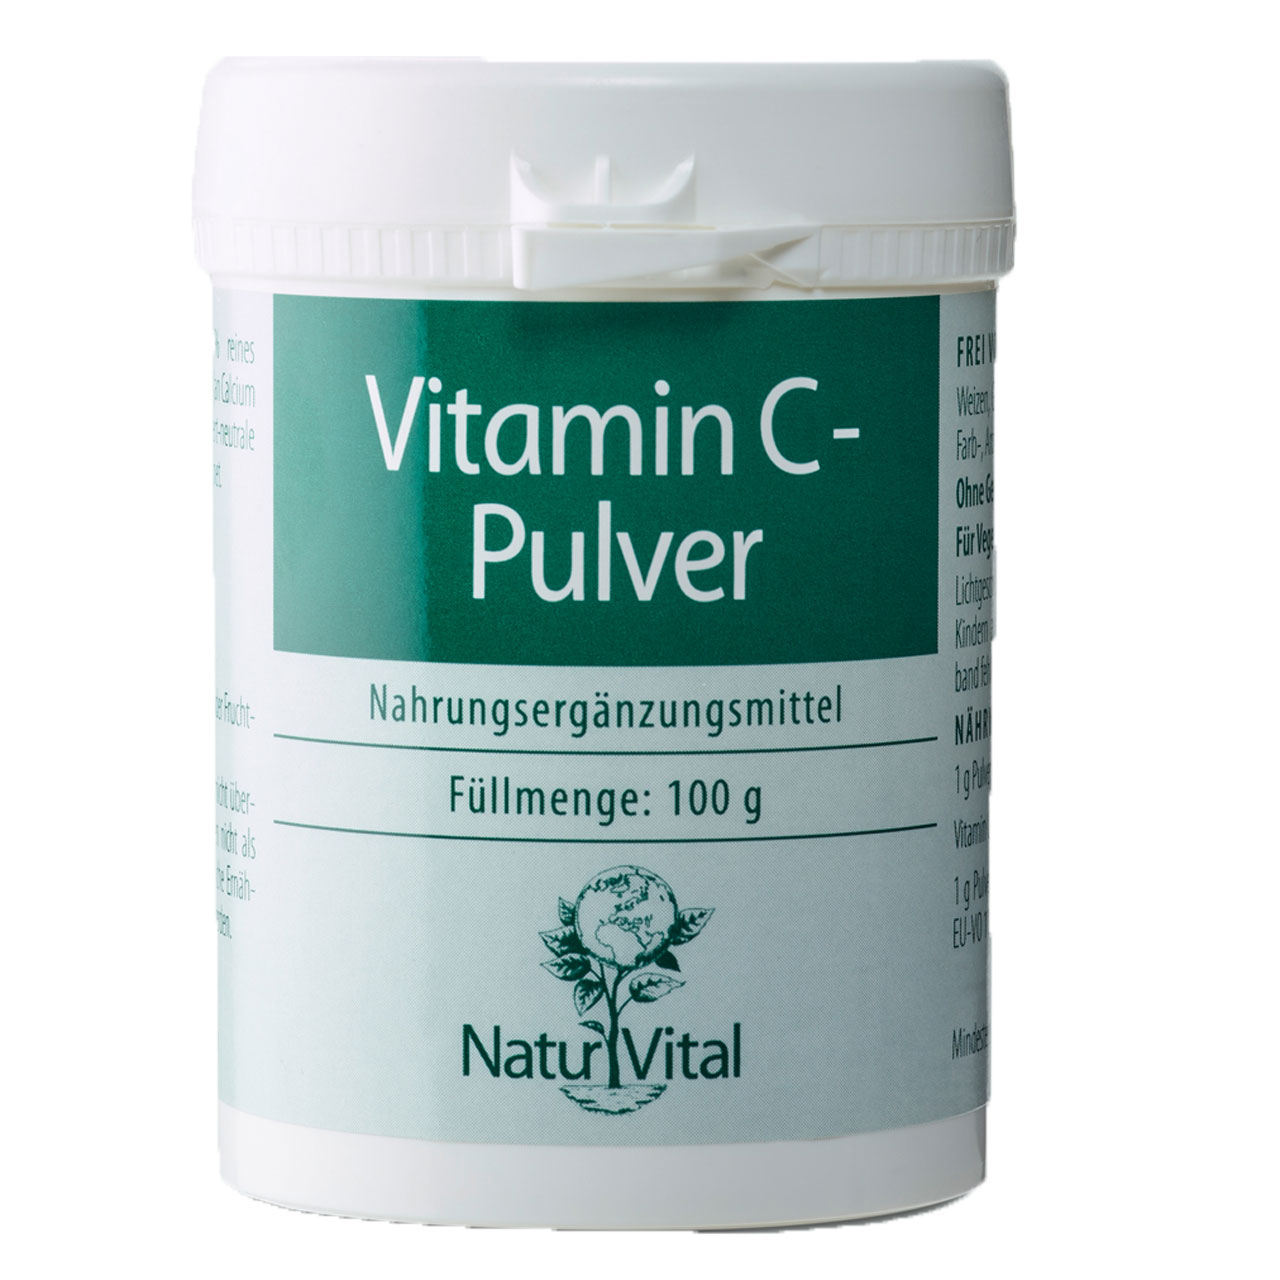 Vitamin C Pulver aus Calcium Ascorbat von Natur Vital beinhaltet 100 Gramm